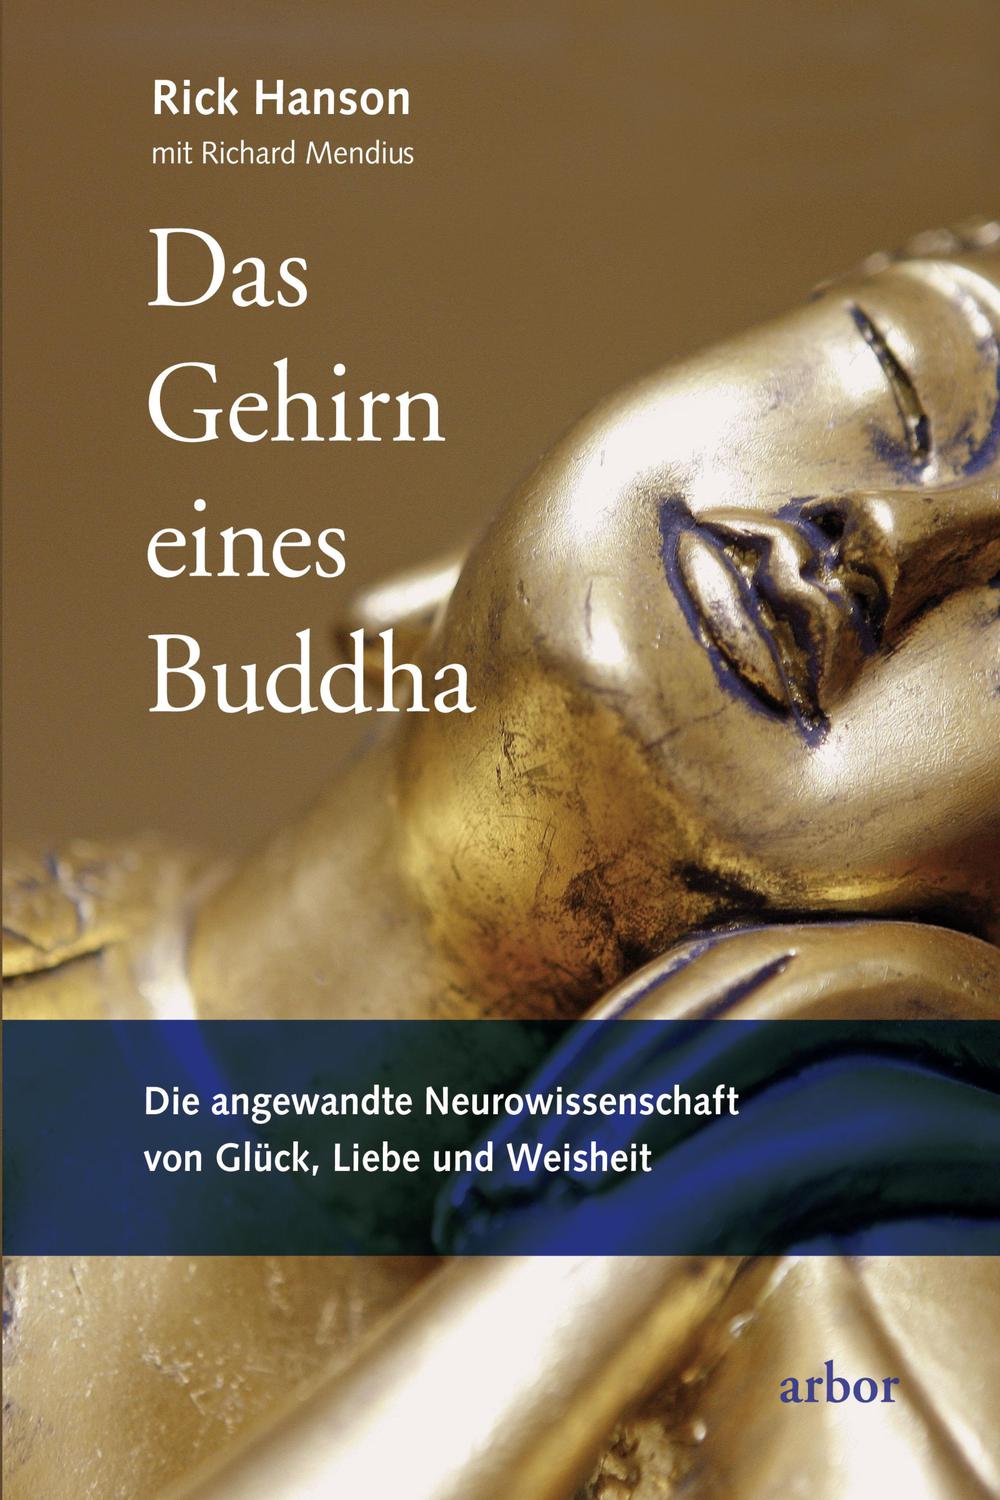 Das Gehirn eines Buddha - Rick Hanson, Richard Mendius,Christine Sadler,